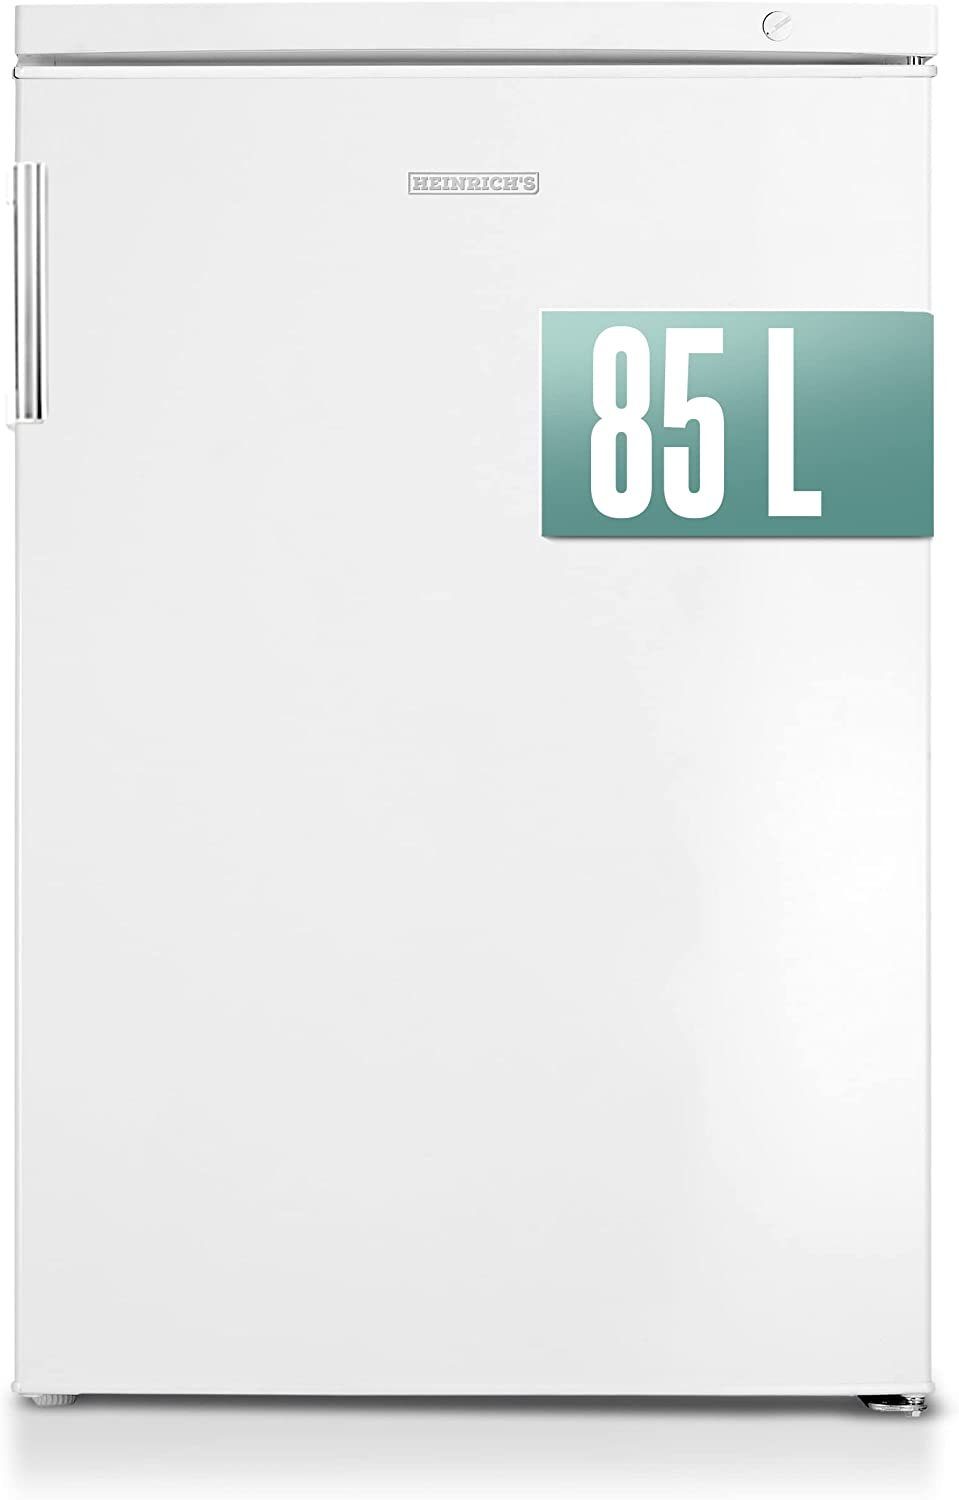 Heinrich´s Gefrierschrank HGS 4090 W, 84.5 cm hoch, 56 cm breit, Freezer, 3x Gefrierschublade, 85 Liter, Temperatur:-18°C~-38°C, weiß